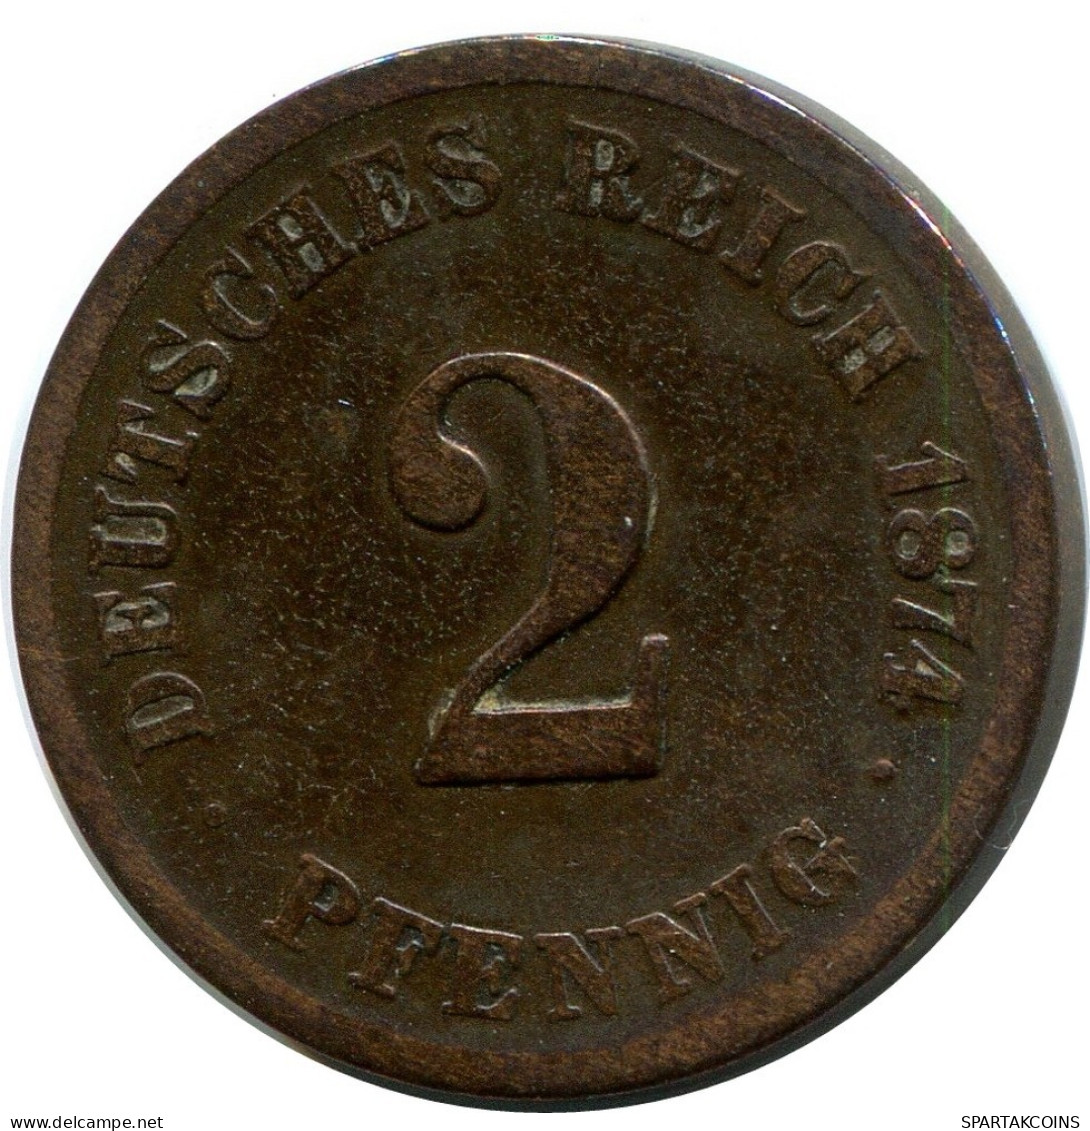 2 PFENNIG 1874 G ALEMANIA Moneda GERMANY #DB825.E.A - 2 Pfennig